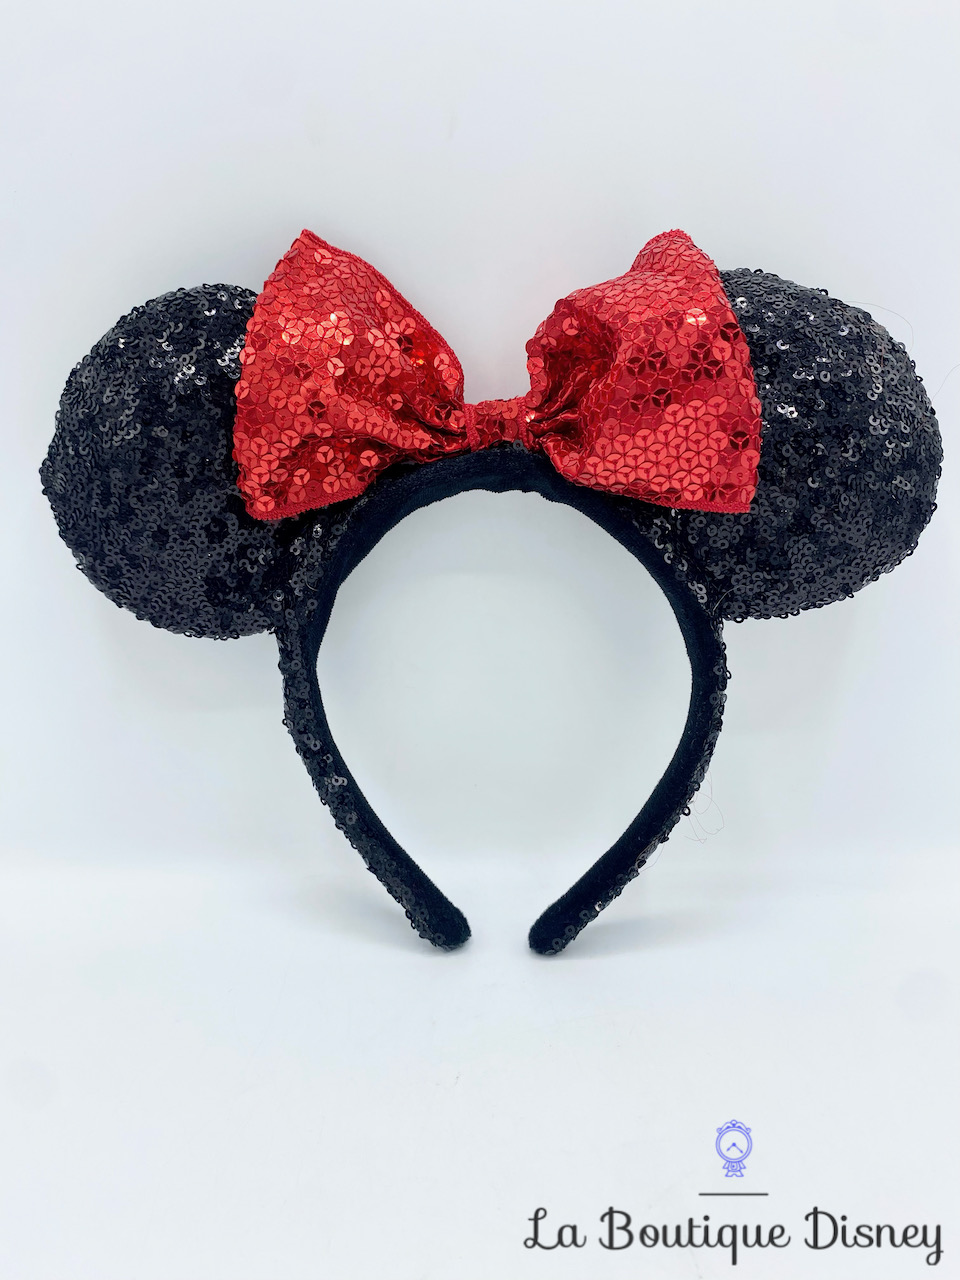 Serre-tête avec oreilles de Disney Mickey Mouse pour enfant, noir, taille  unique, accessoire de costume à porter pour l'Halloween